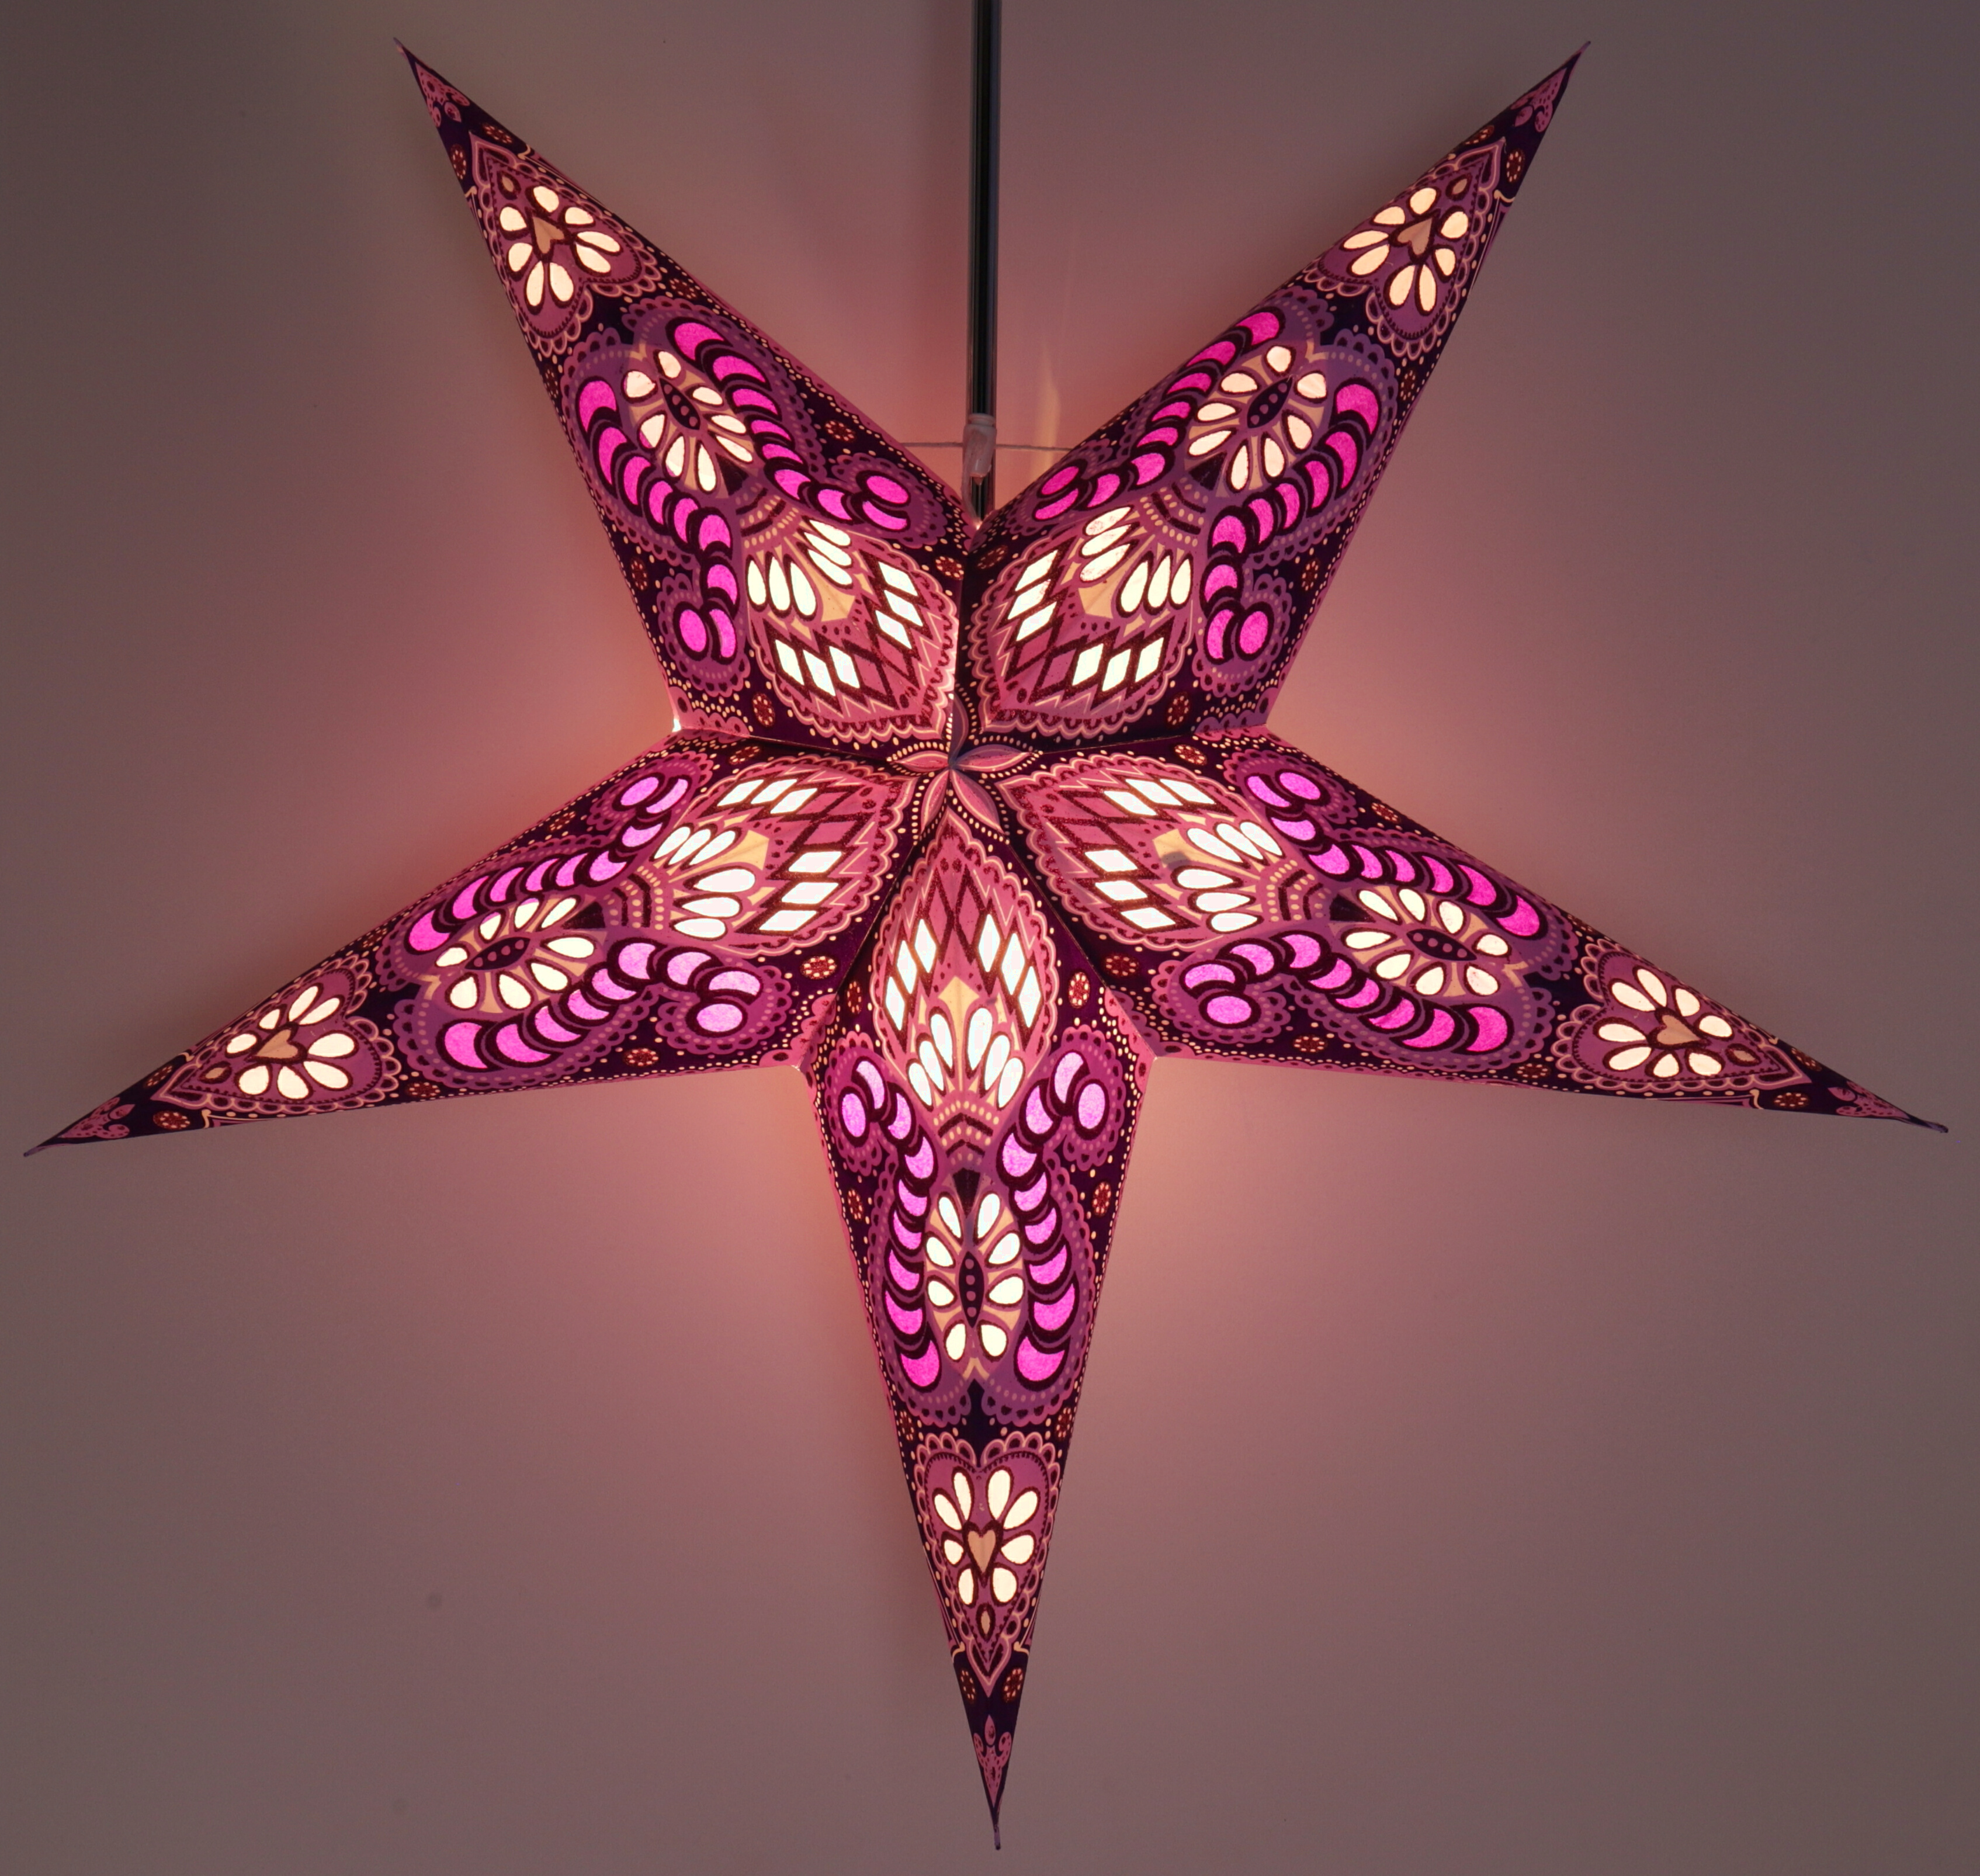 Papierstern Leuchtstern Weihnachtsstern pink lila rot 60cm inkl Kabel Fassung 